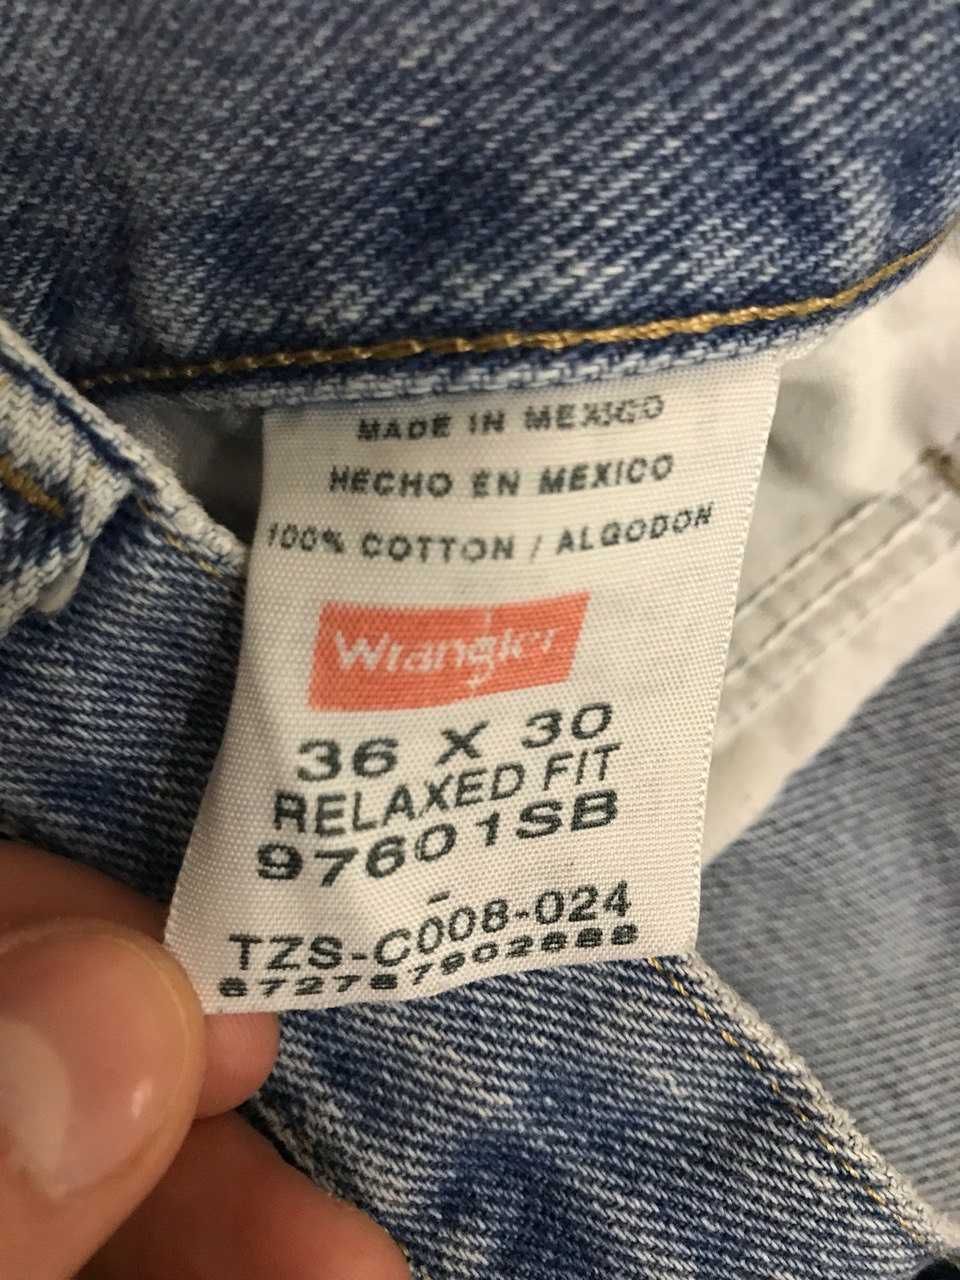 Мужские джинсы штаны Vintage Wrangler Size 36/30 оригинал